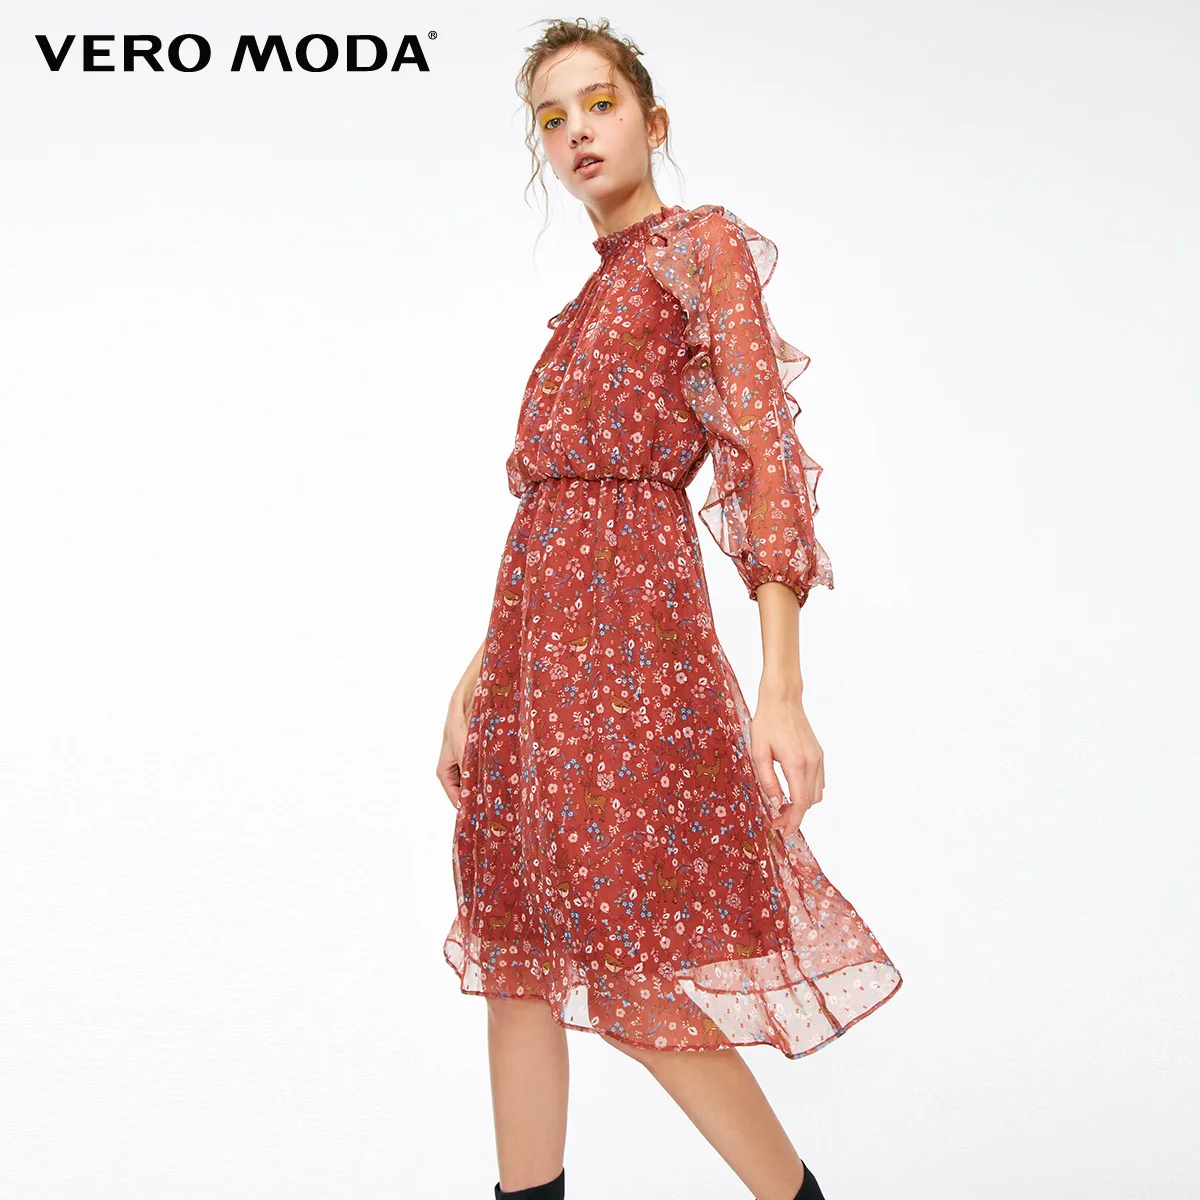 Vero Moda Новое Женское шифоновое платье с оборками и принтом | 31847C516 - Цвет: Rich copper